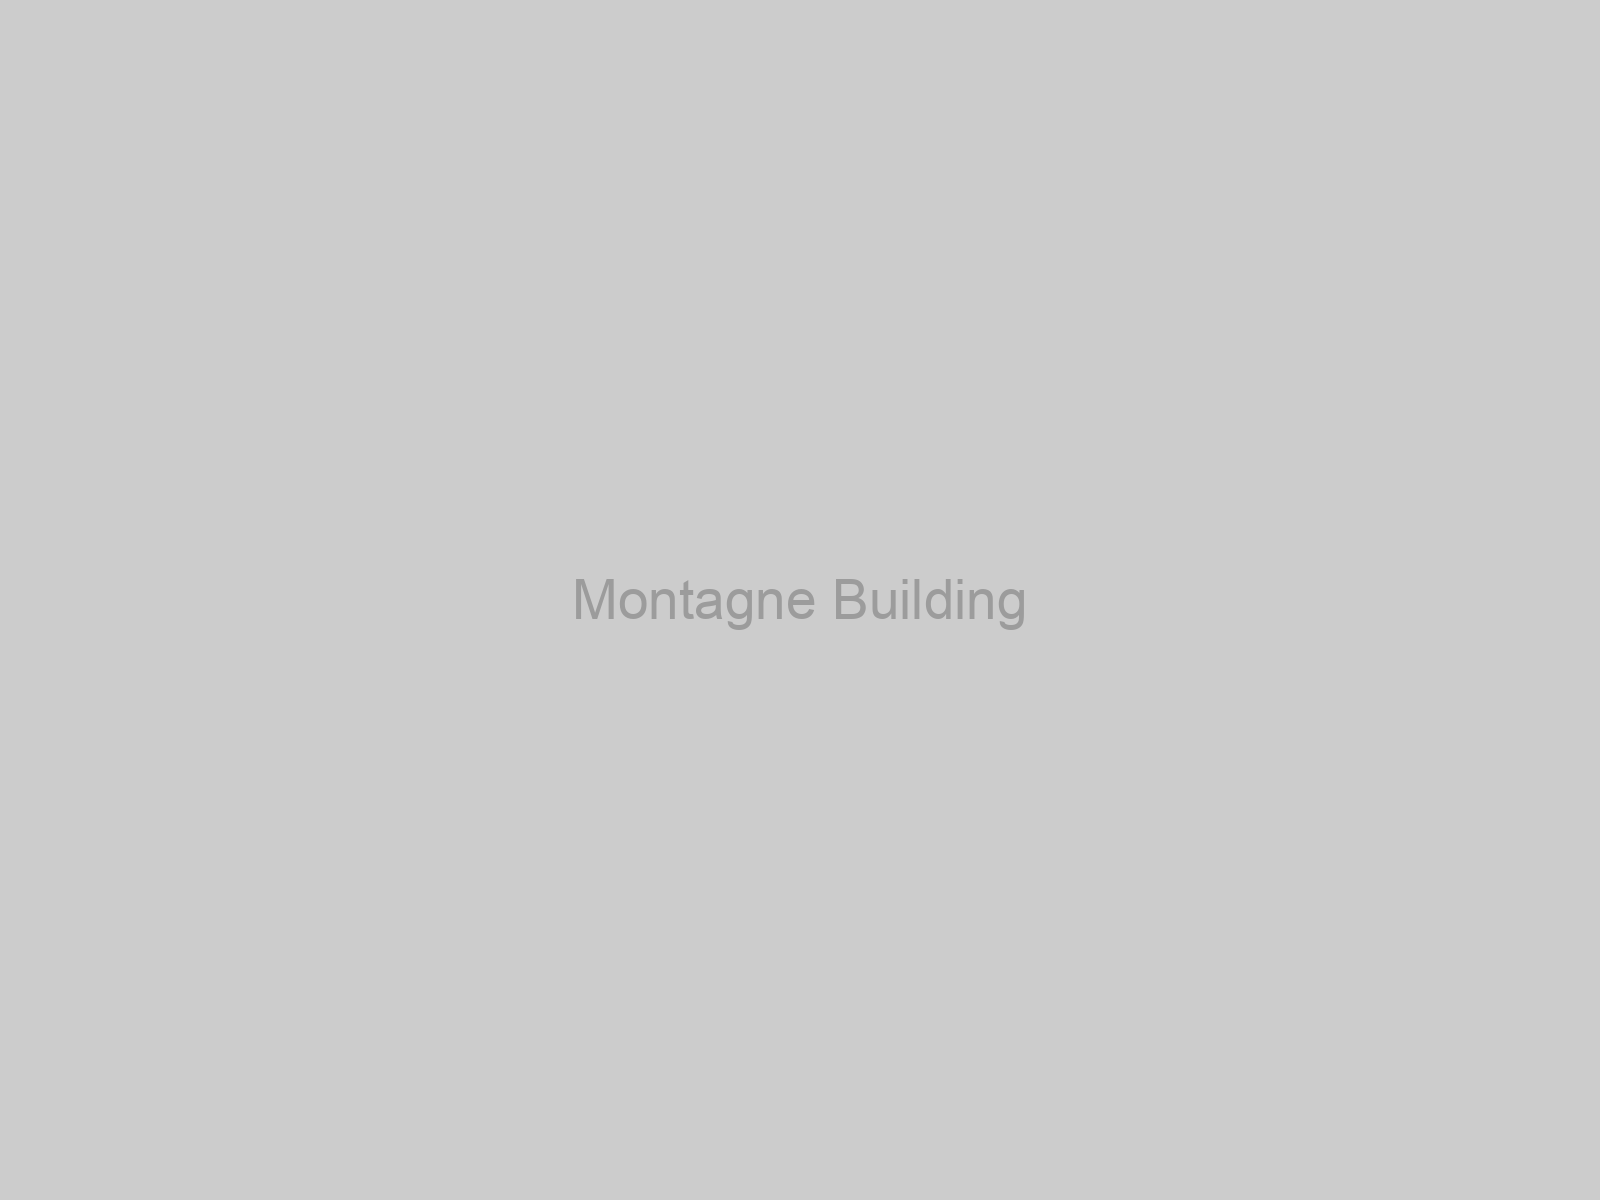 Montagne Building